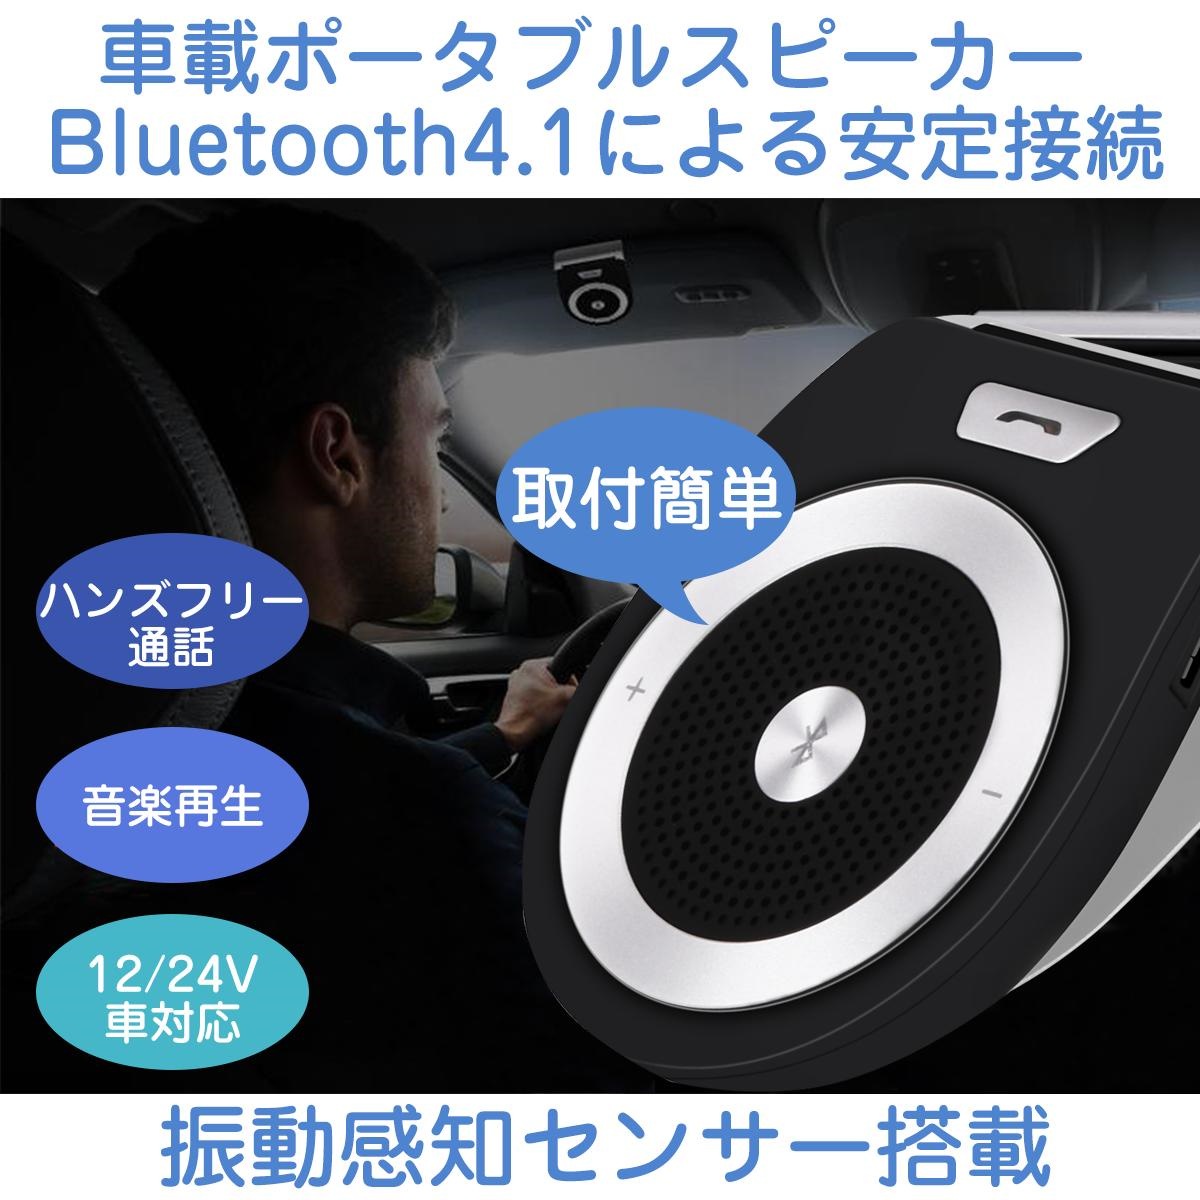 Qoo10 Agptek 車載用 Bluetoothスピーカー ワイヤレス ブルートゥース4 0 ポータブルスピーカーホン カースピーカー 車載スピーカー 車用品 カー用品 ハンズフリー通話 音楽 ブラック